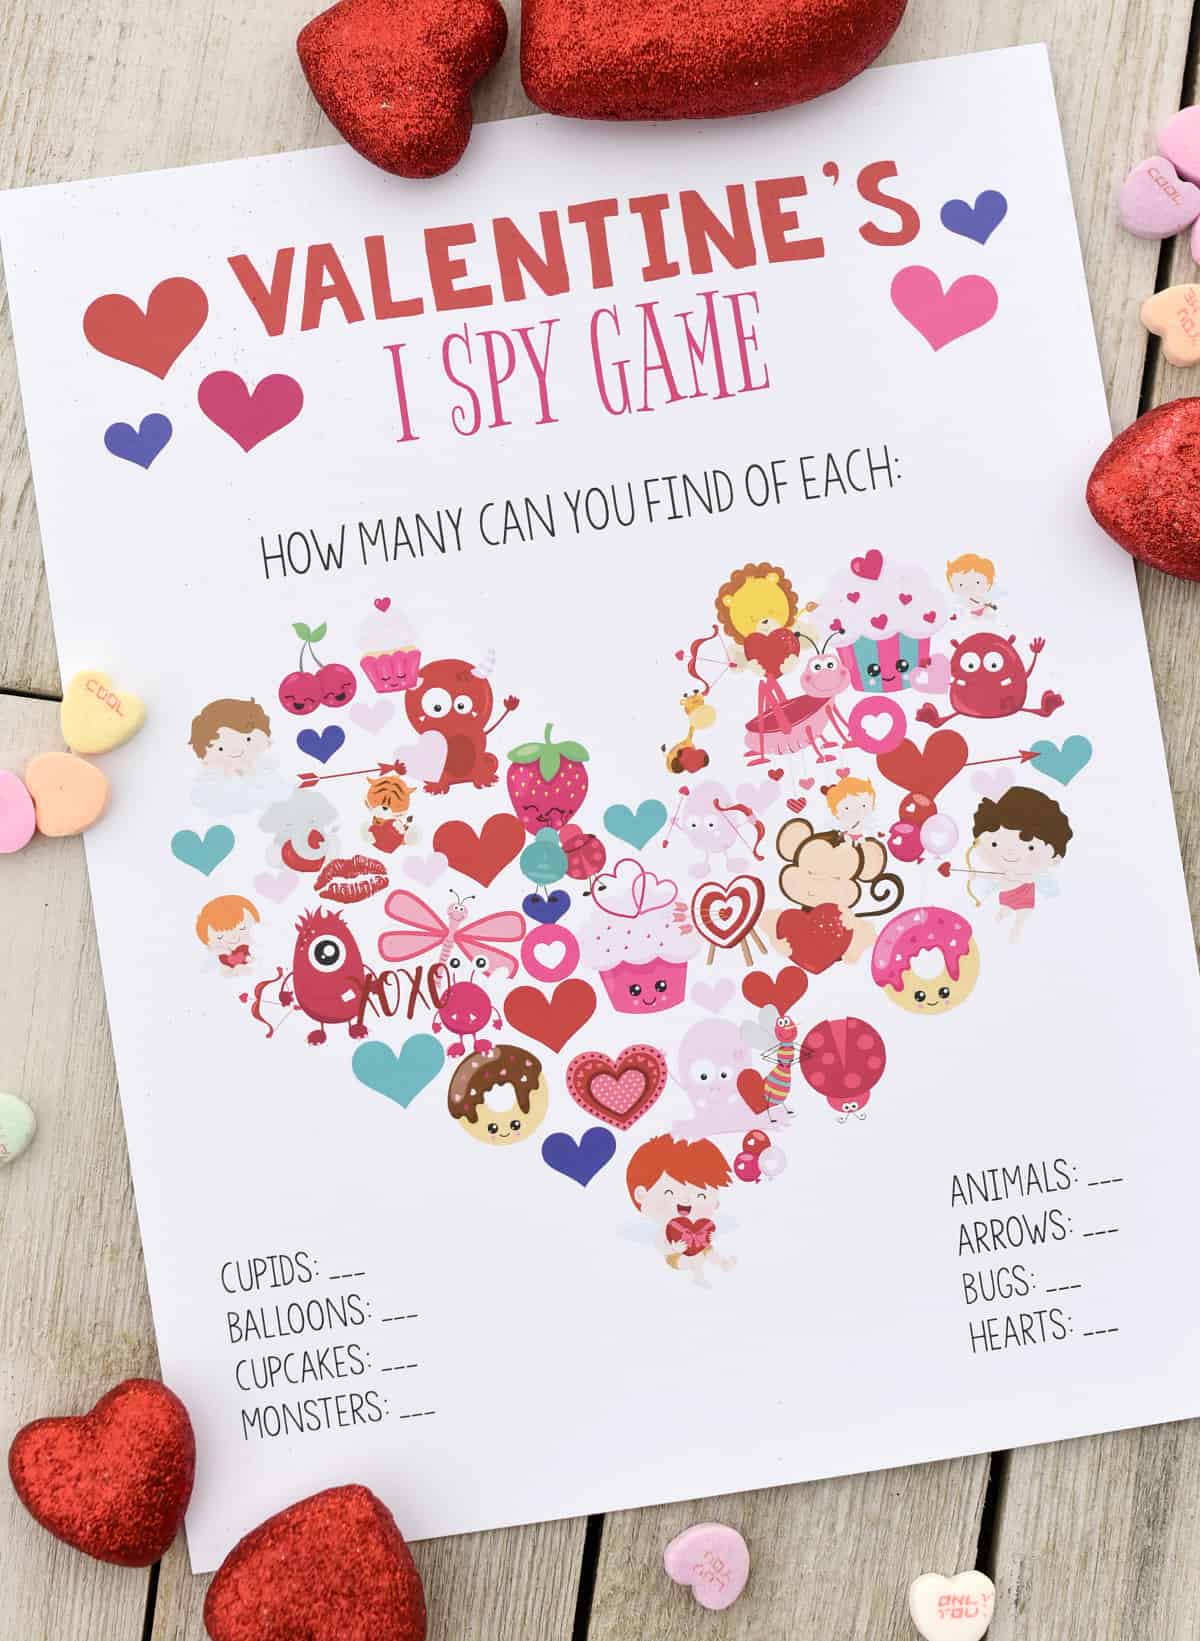 Valentines I Spy Game Organization Obsessed